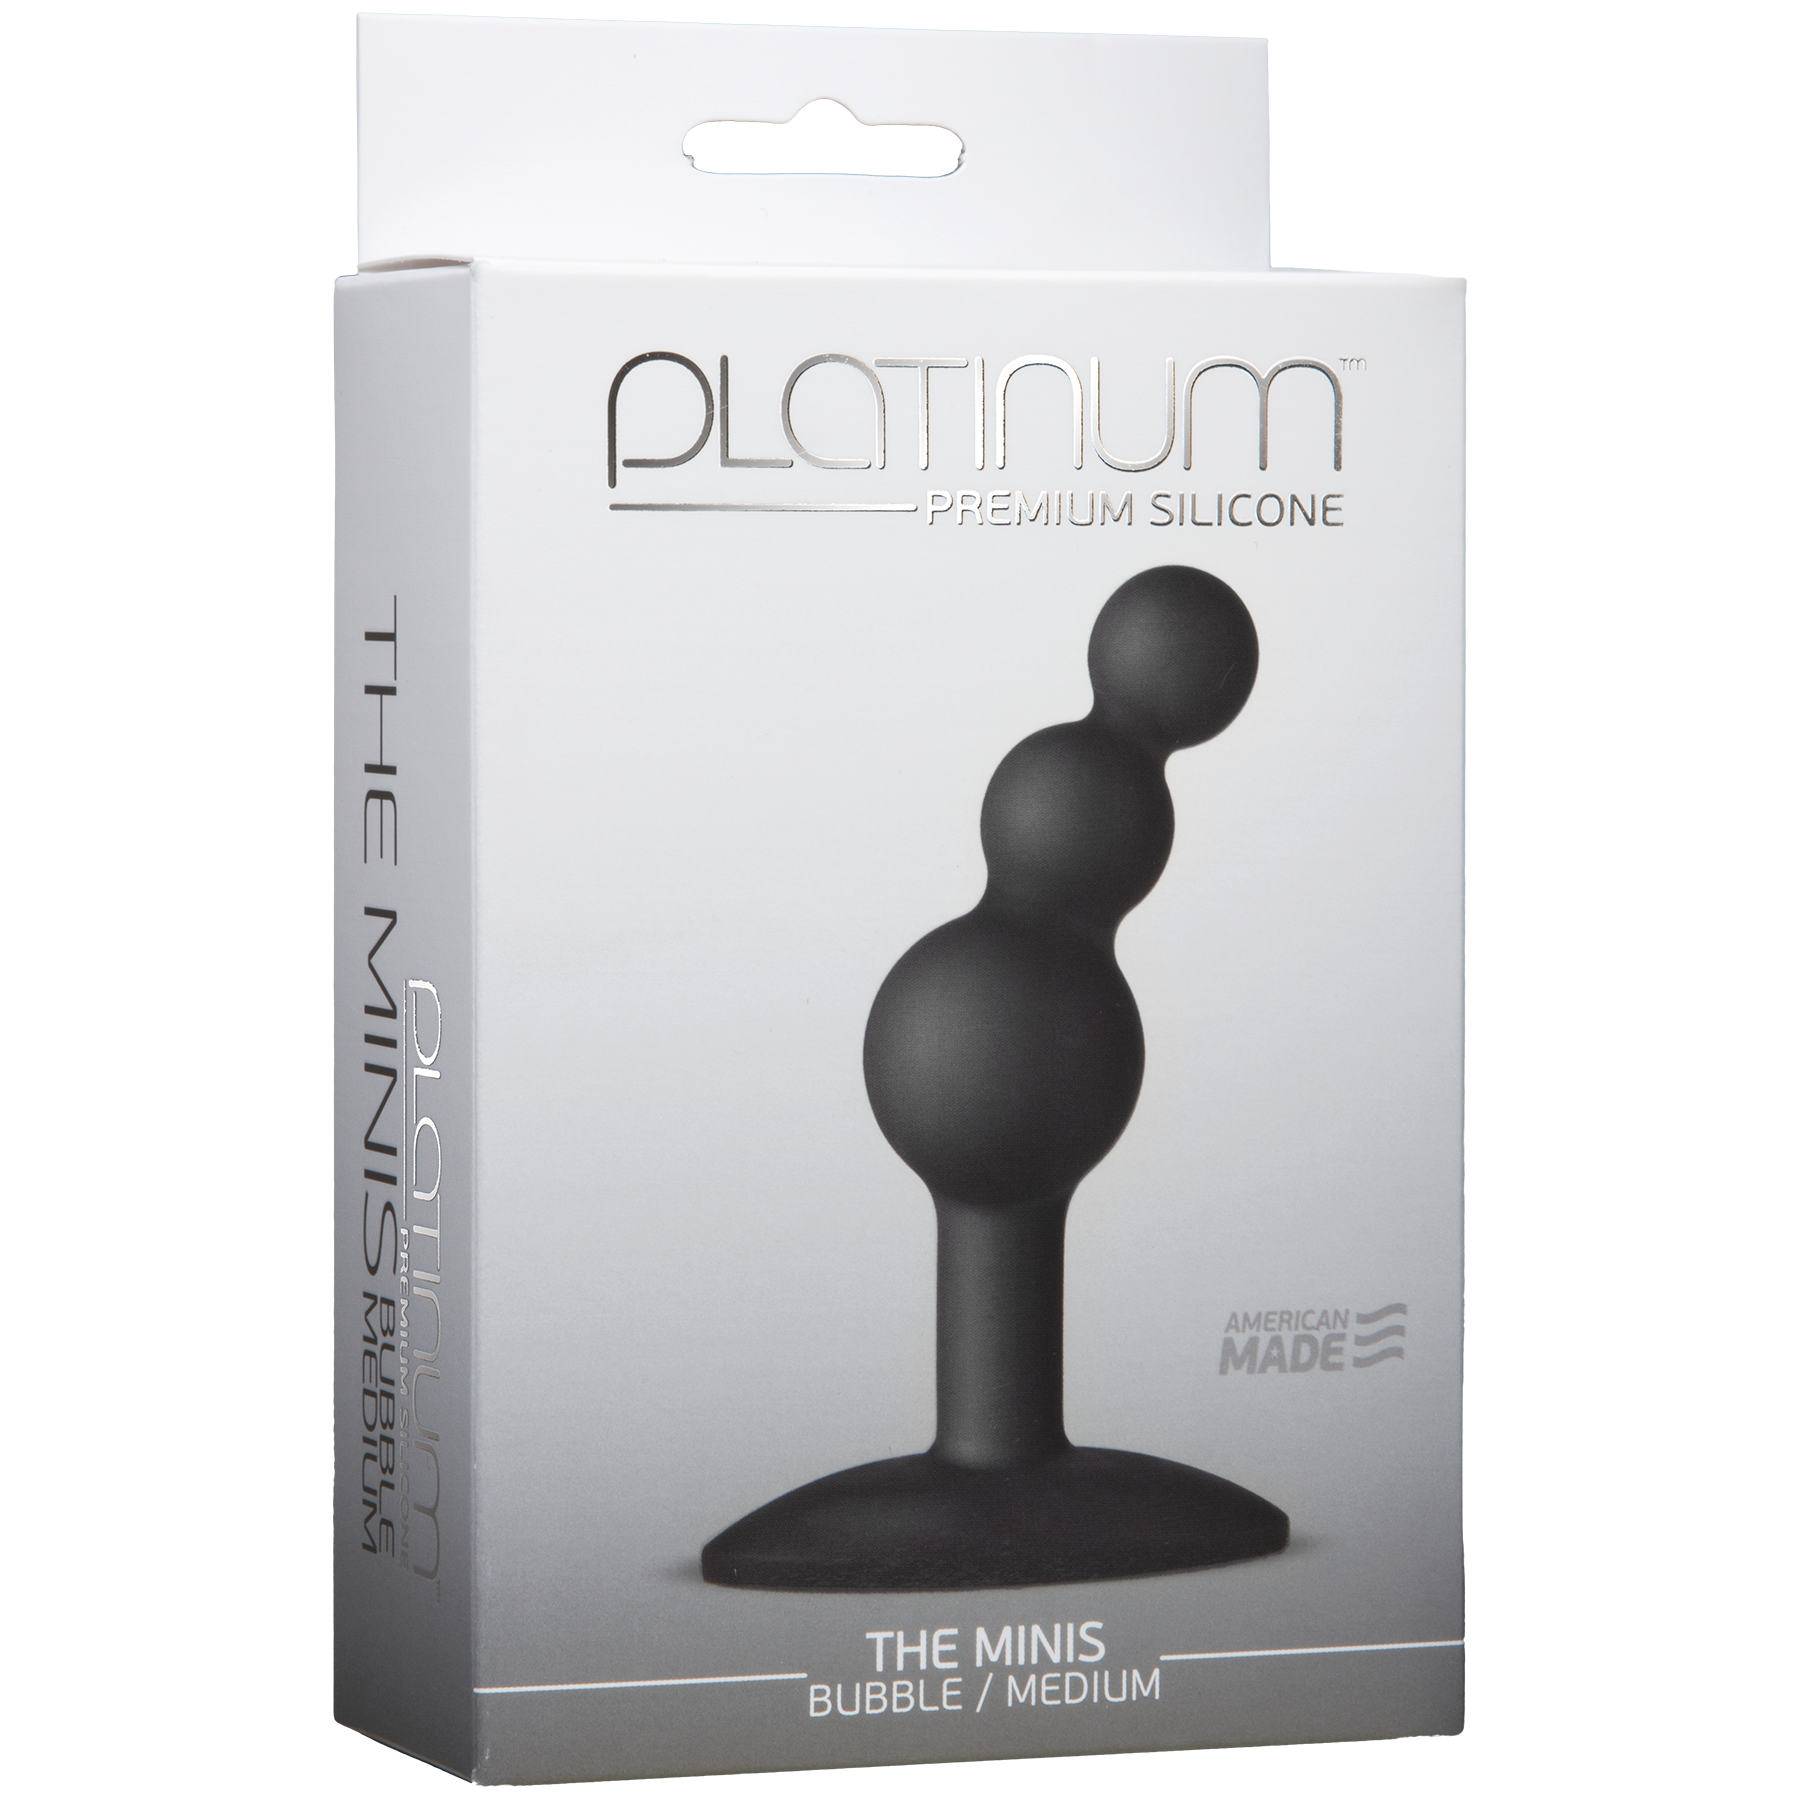 Platinum Premium Silicone The Mini's Bubble - Medium, Black - Thorn & Feather Sex Toy Canada